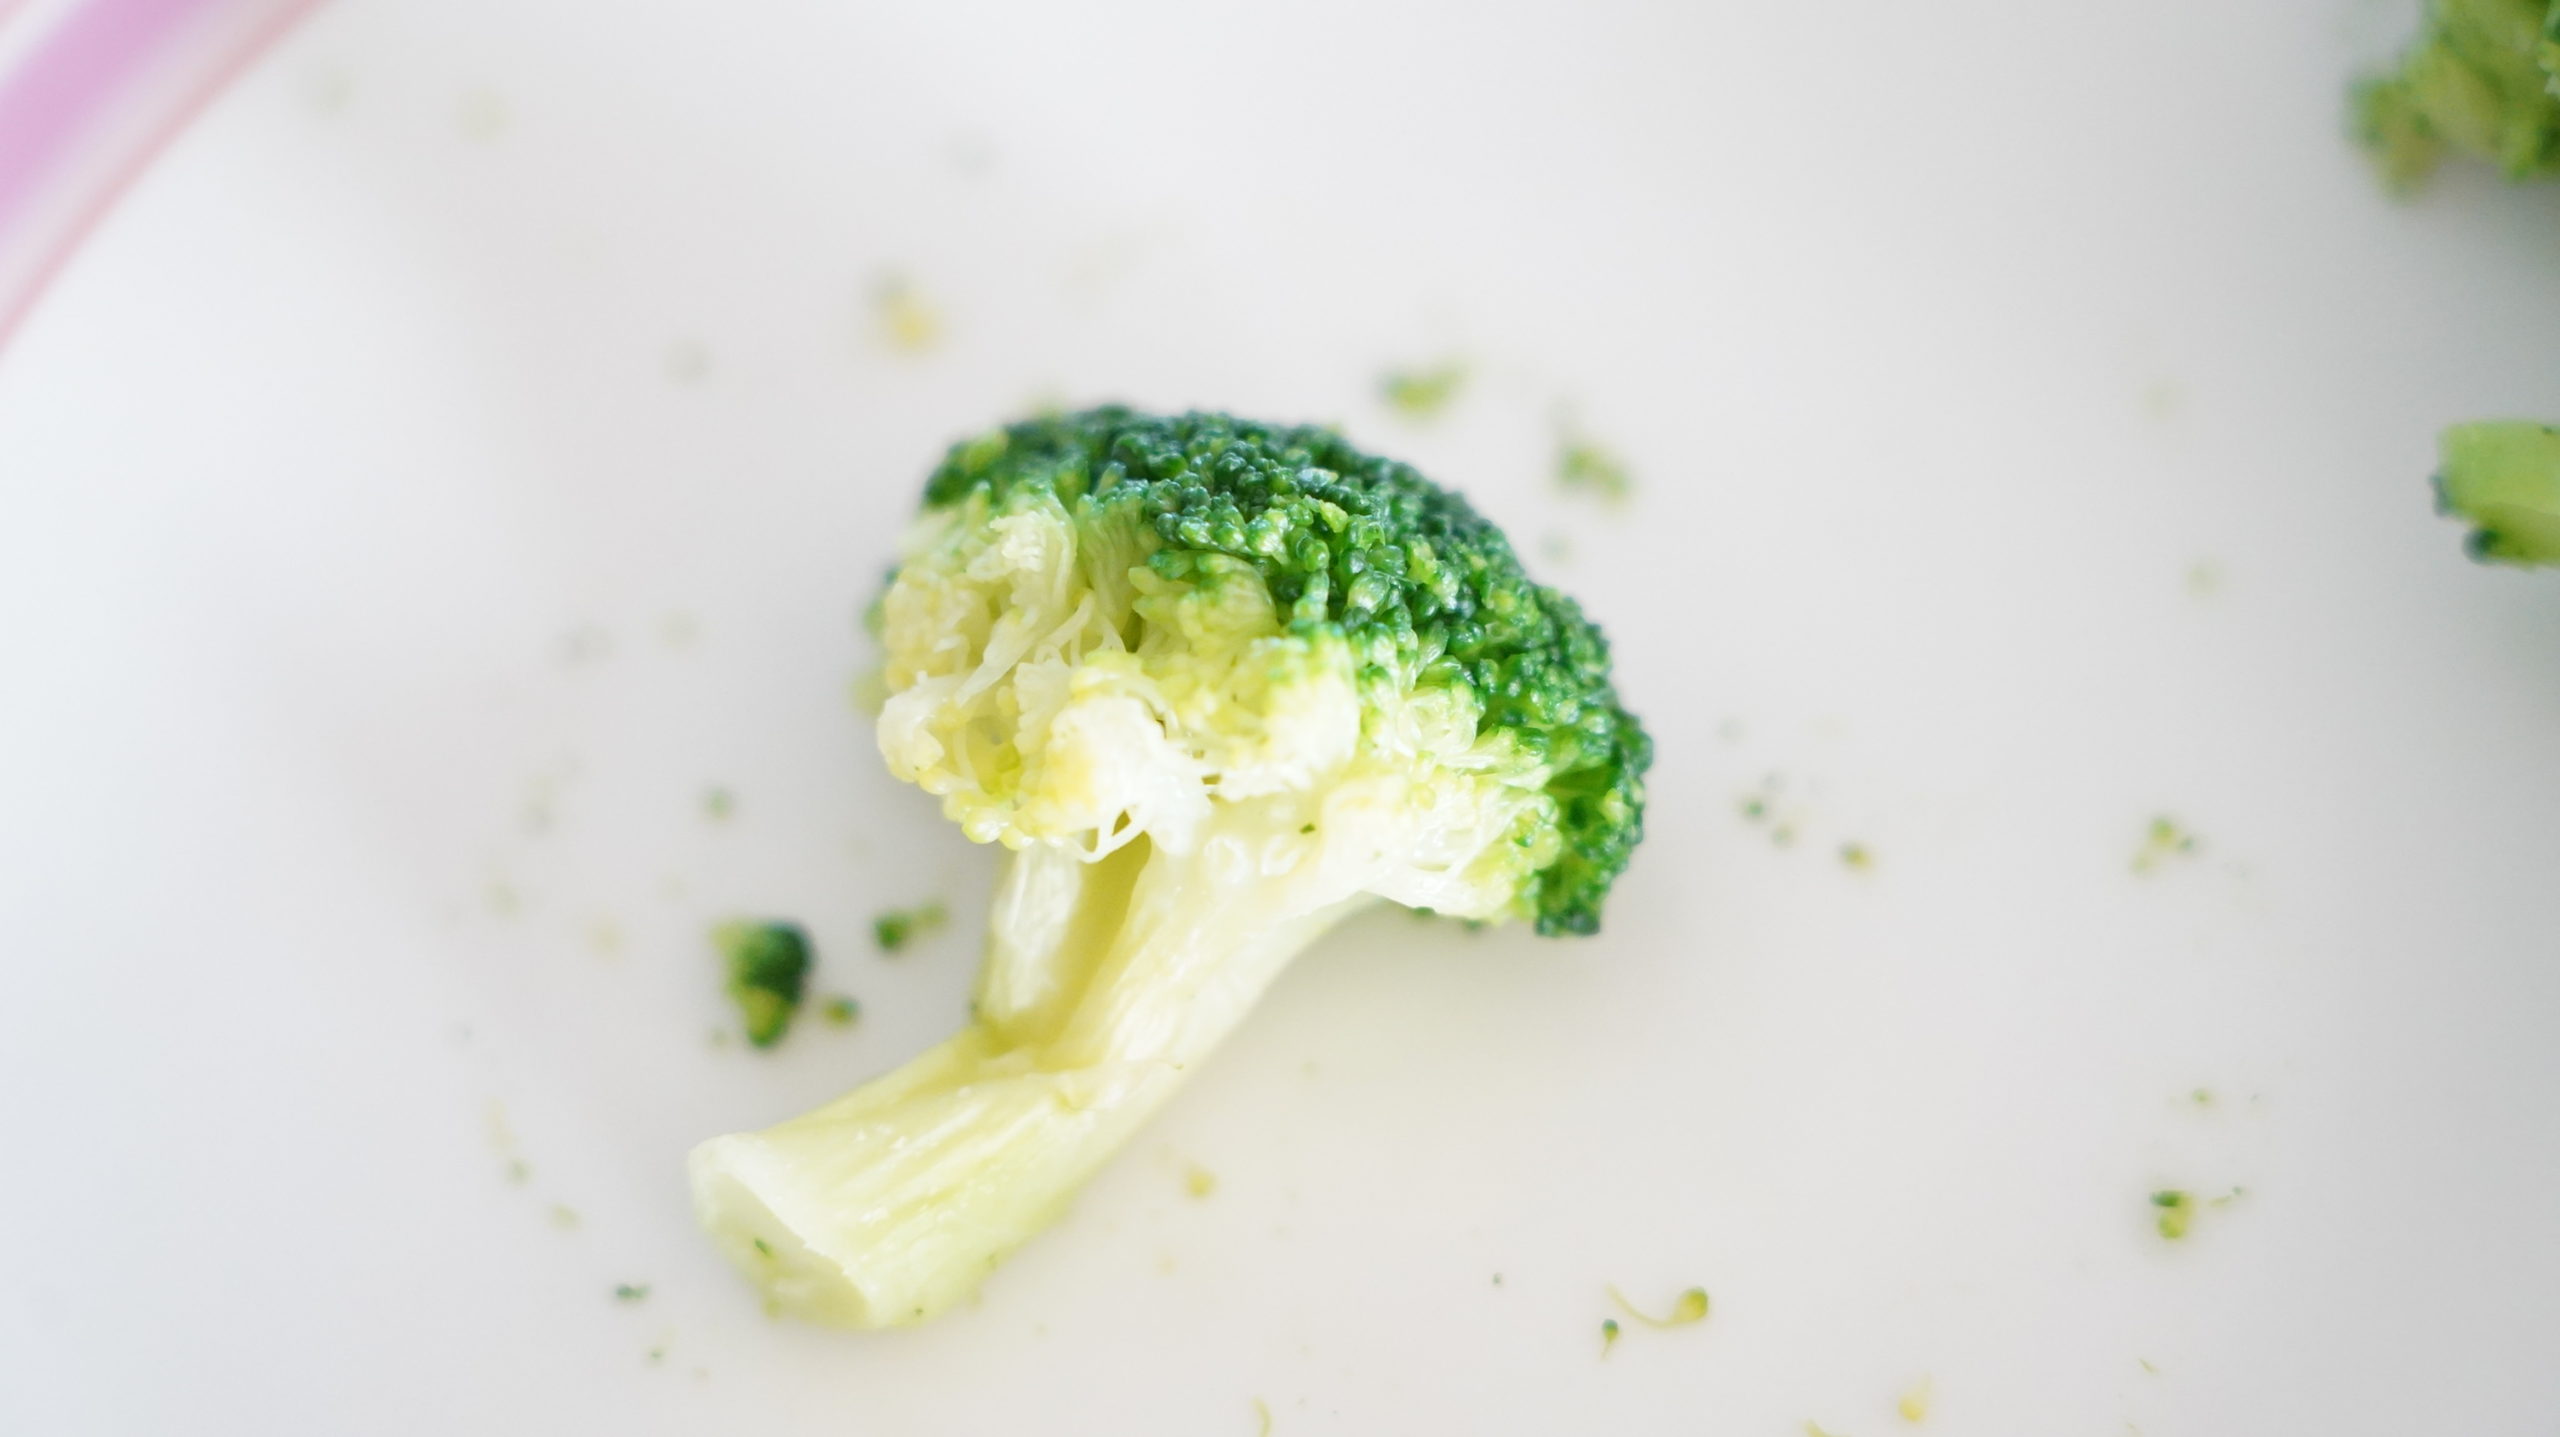 コストコの冷凍食品「ブロッコリー 100%ナチュラル」のクローズアップ写真